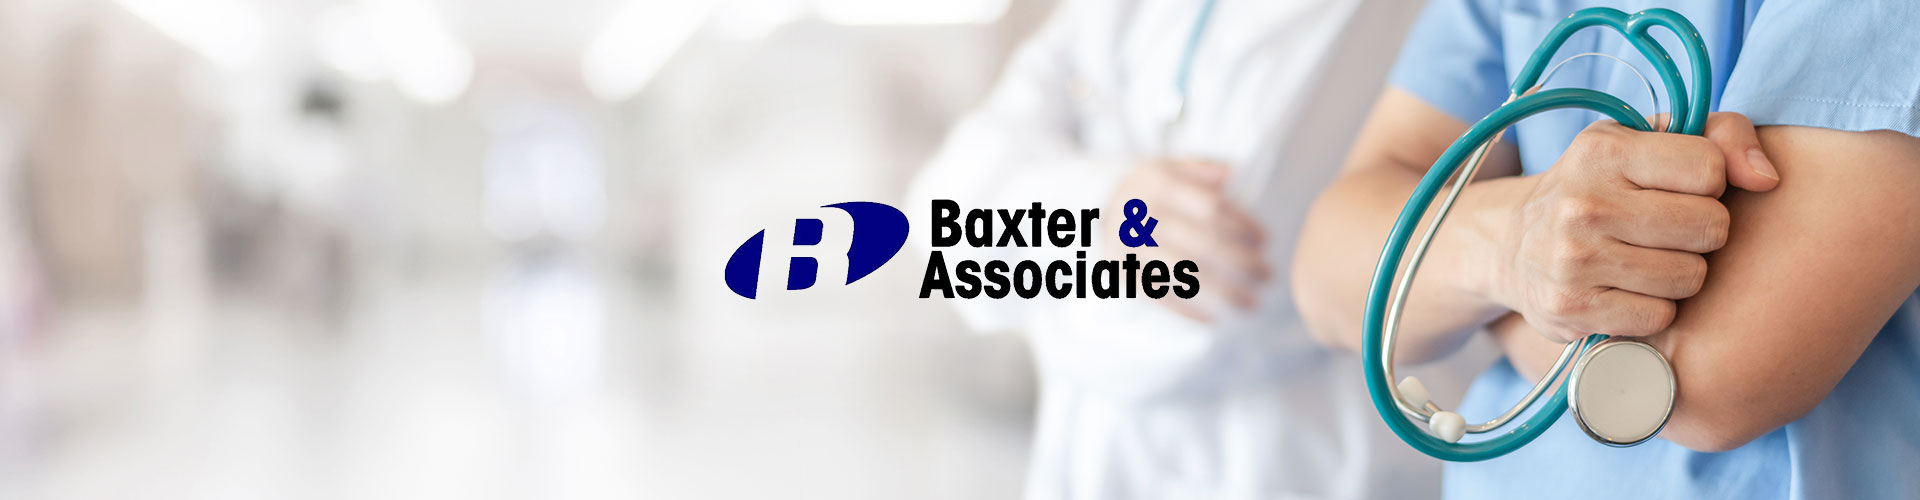 Case Study - Baxter & Associates